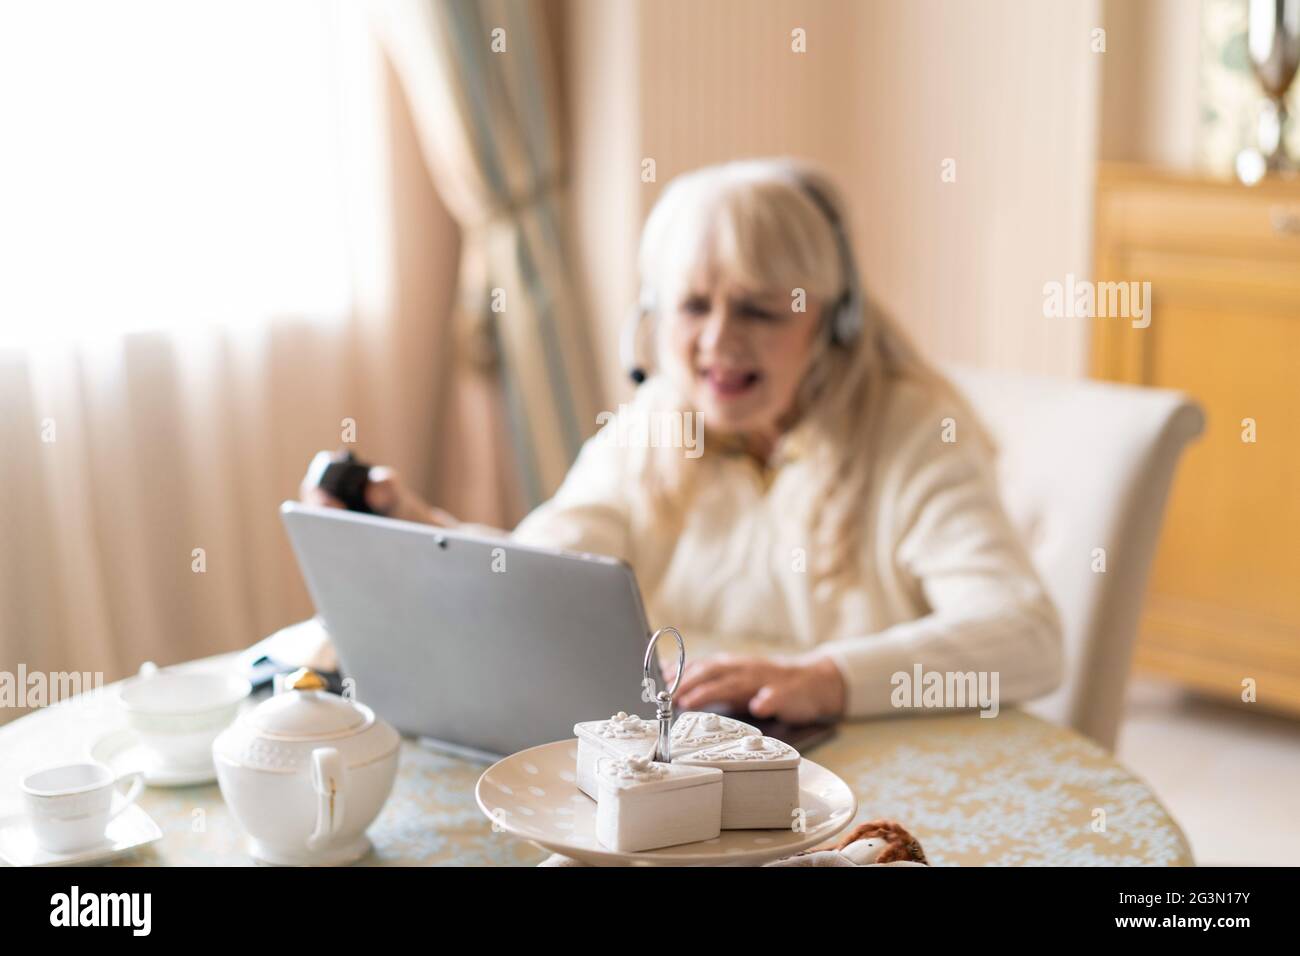 Une femme âgée joue à des jeux vidéo avec un joystick sur un ordinateur portable Banque D'Images